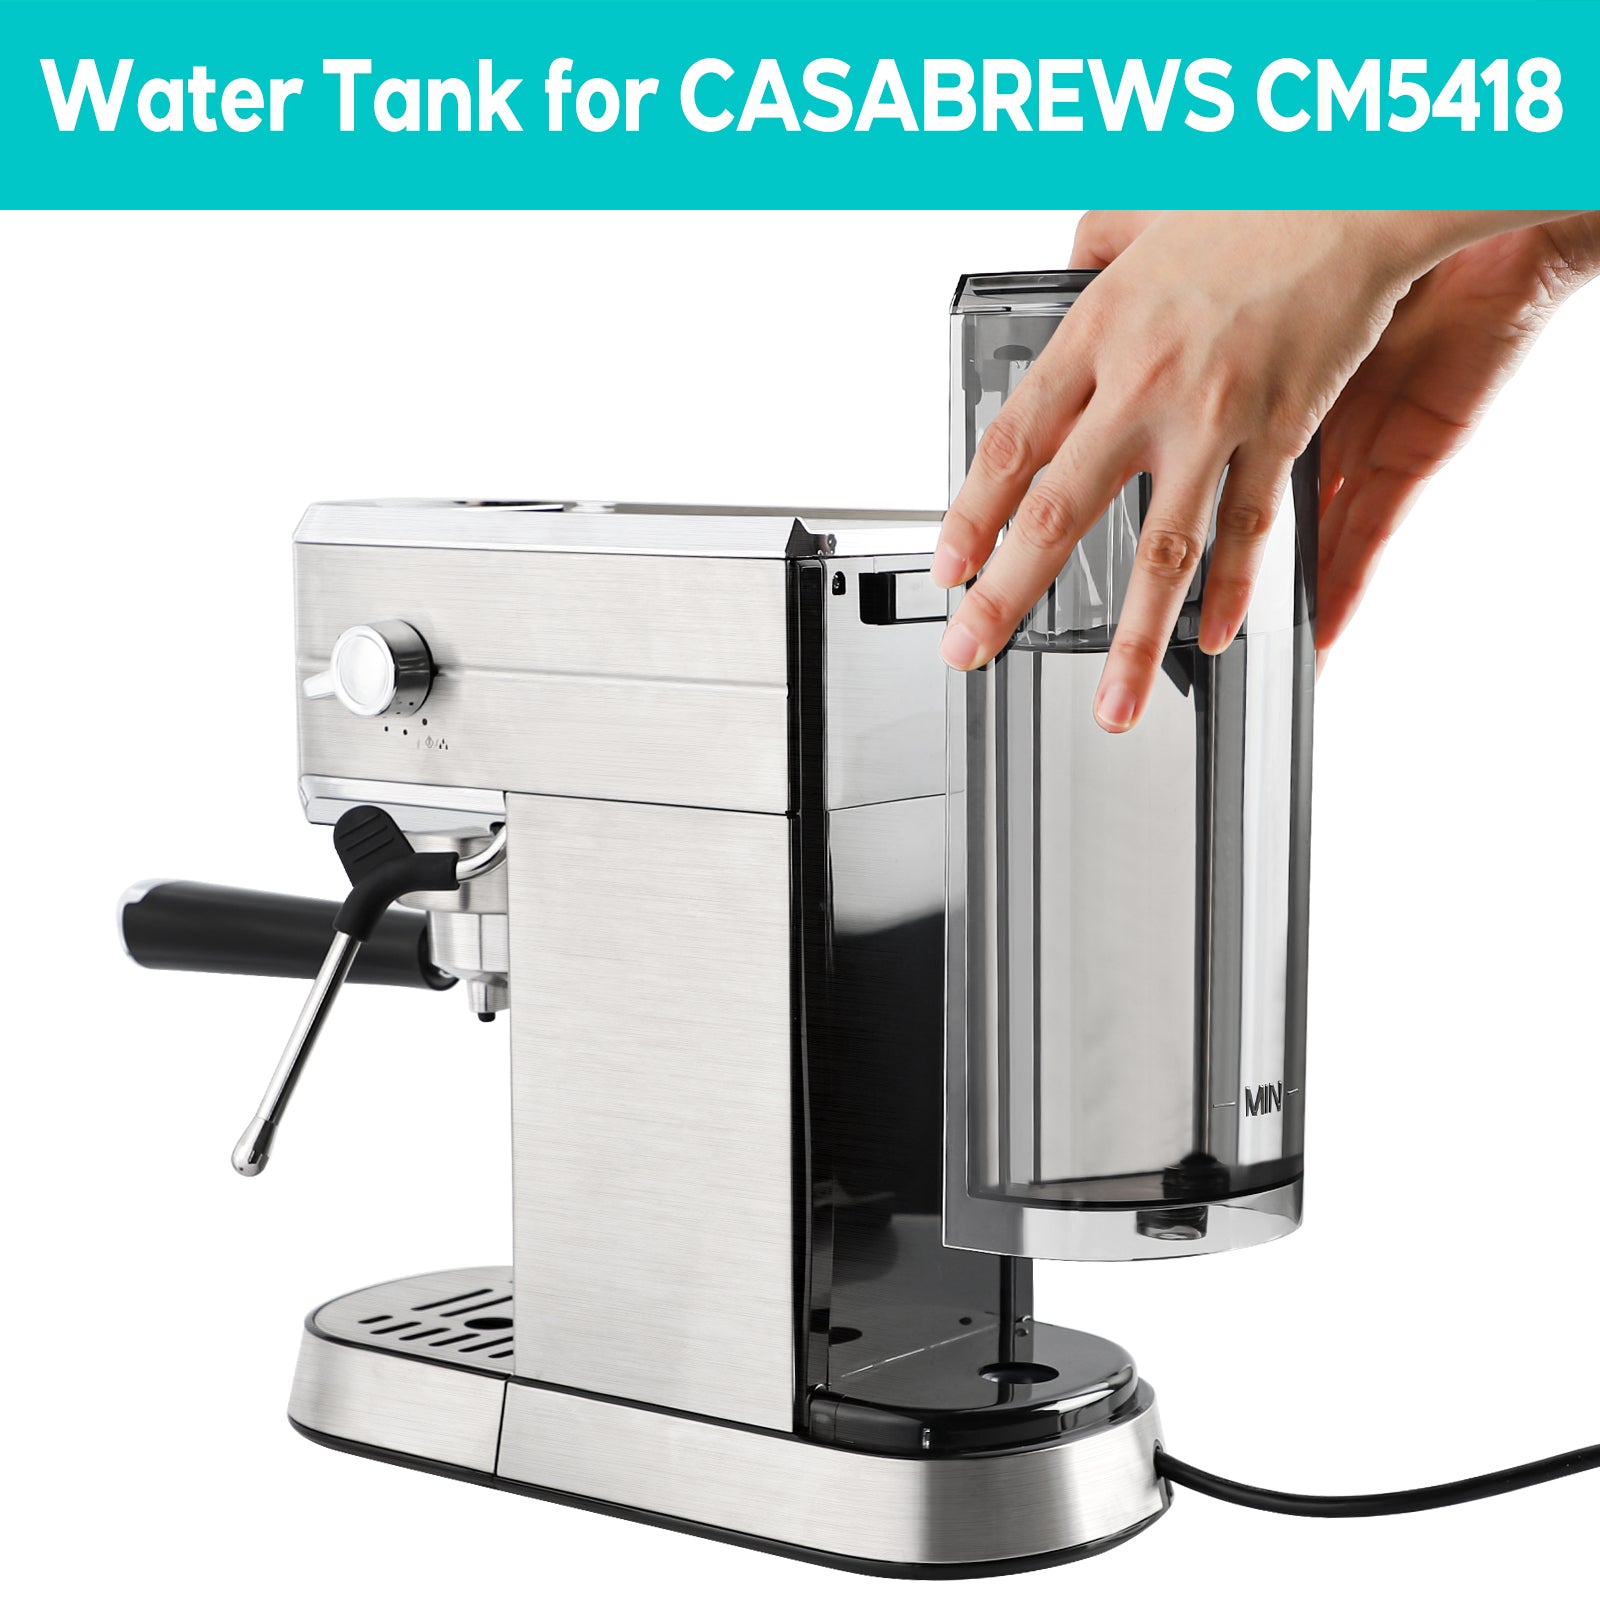 Casabrews Espresso Machine Series 5418 Water Tank